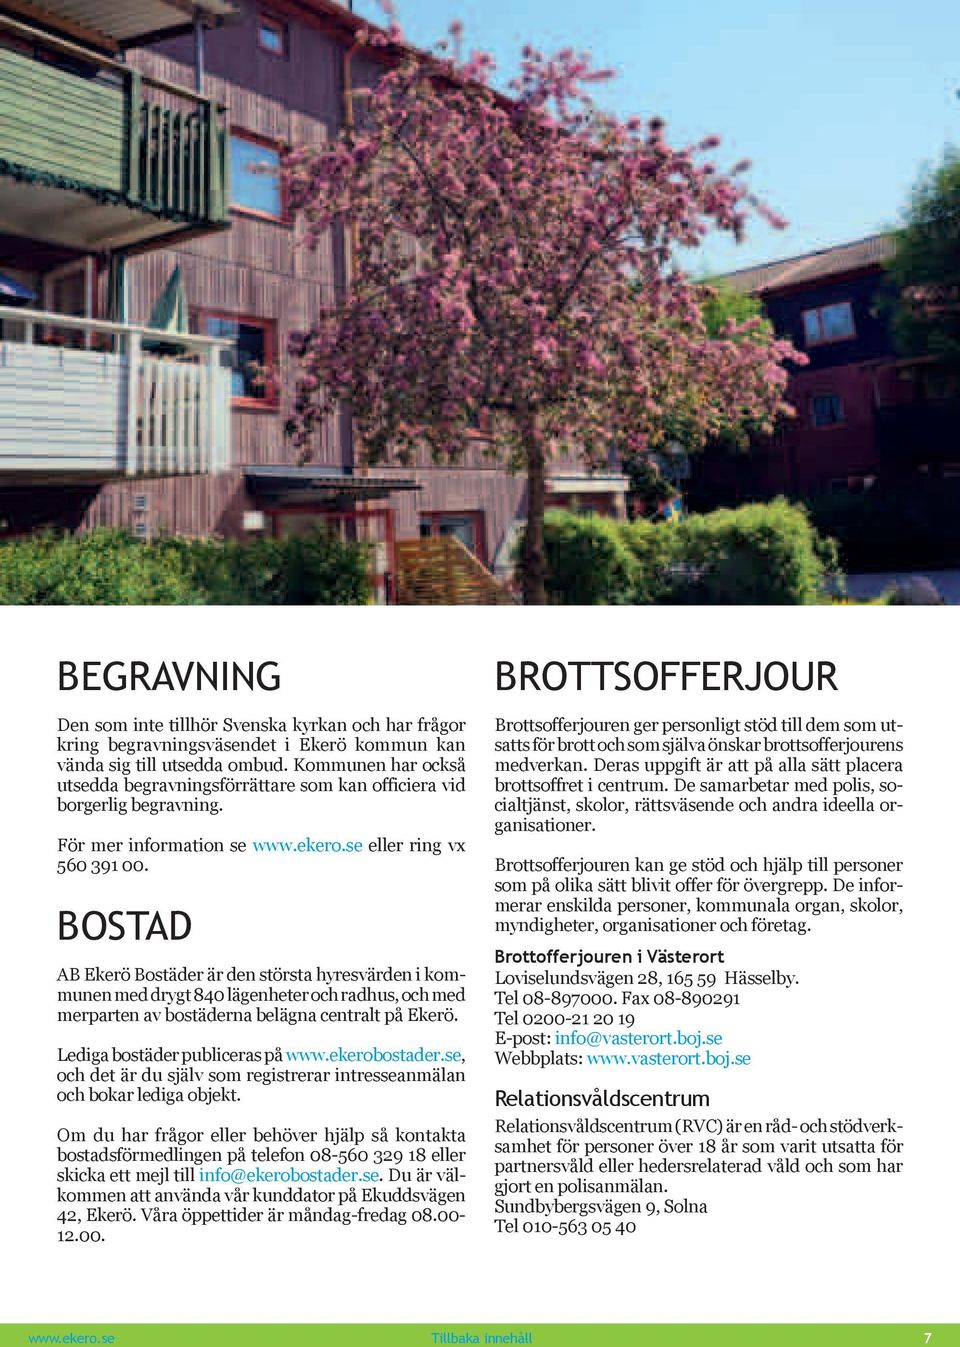 Bostad AB Ekerö Bostäder är den största hyresvärden i kommunen med drygt 840 lägenheter och radhus, och med merparten av bostäderna belägna centralt på Ekerö. Lediga bostäder publiceras på www.